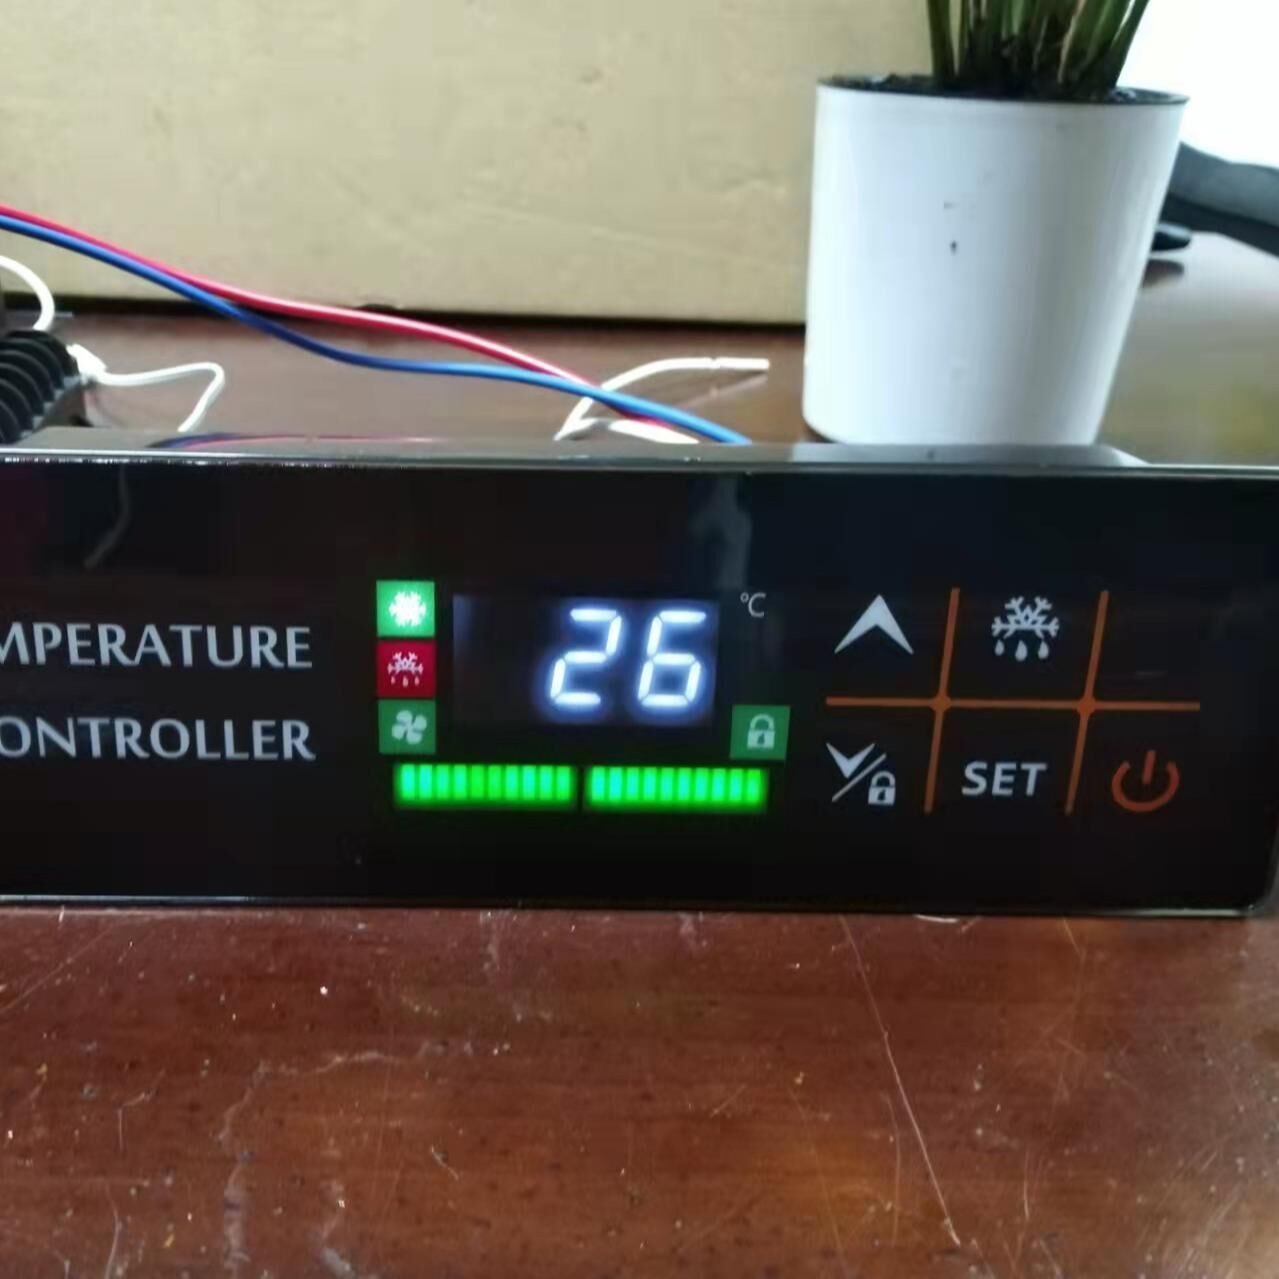 温度控制器  KR-704  特点：温度显示 温度控制 风机控制 化霜控制 超限报警 故障自诊断